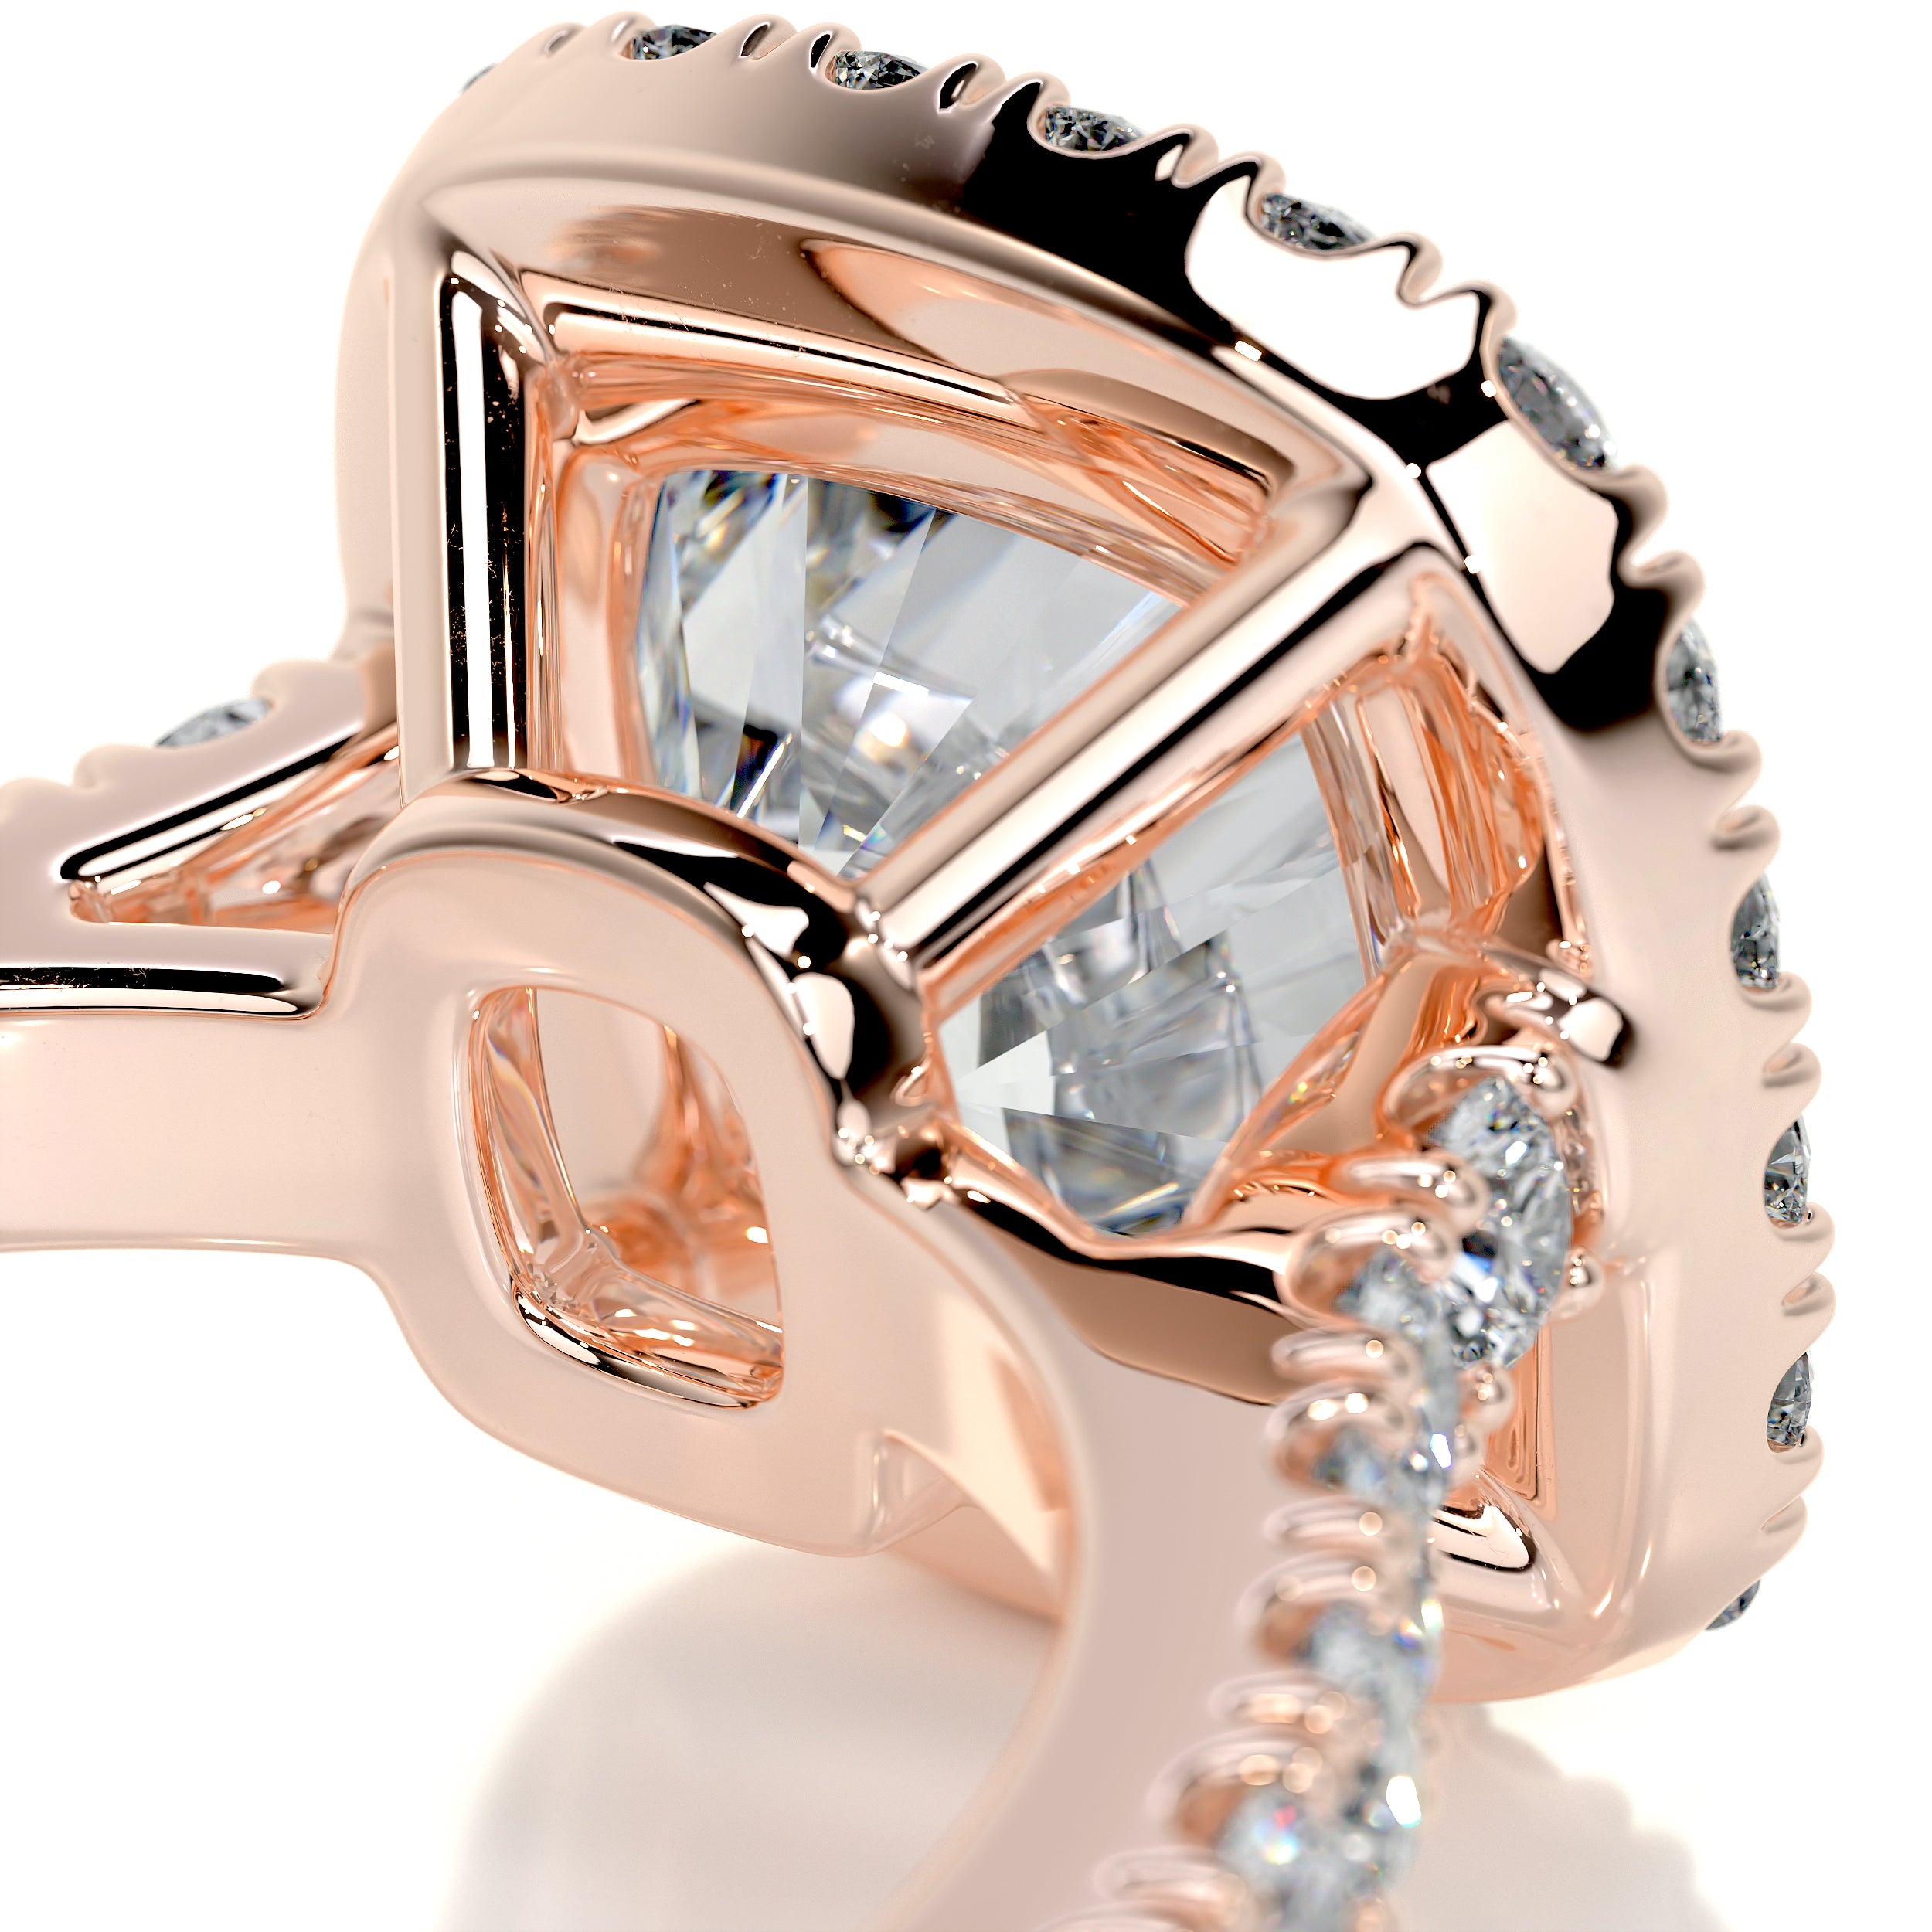 Celeste Moissanite & Diamonds Ring -14K Rose Gold